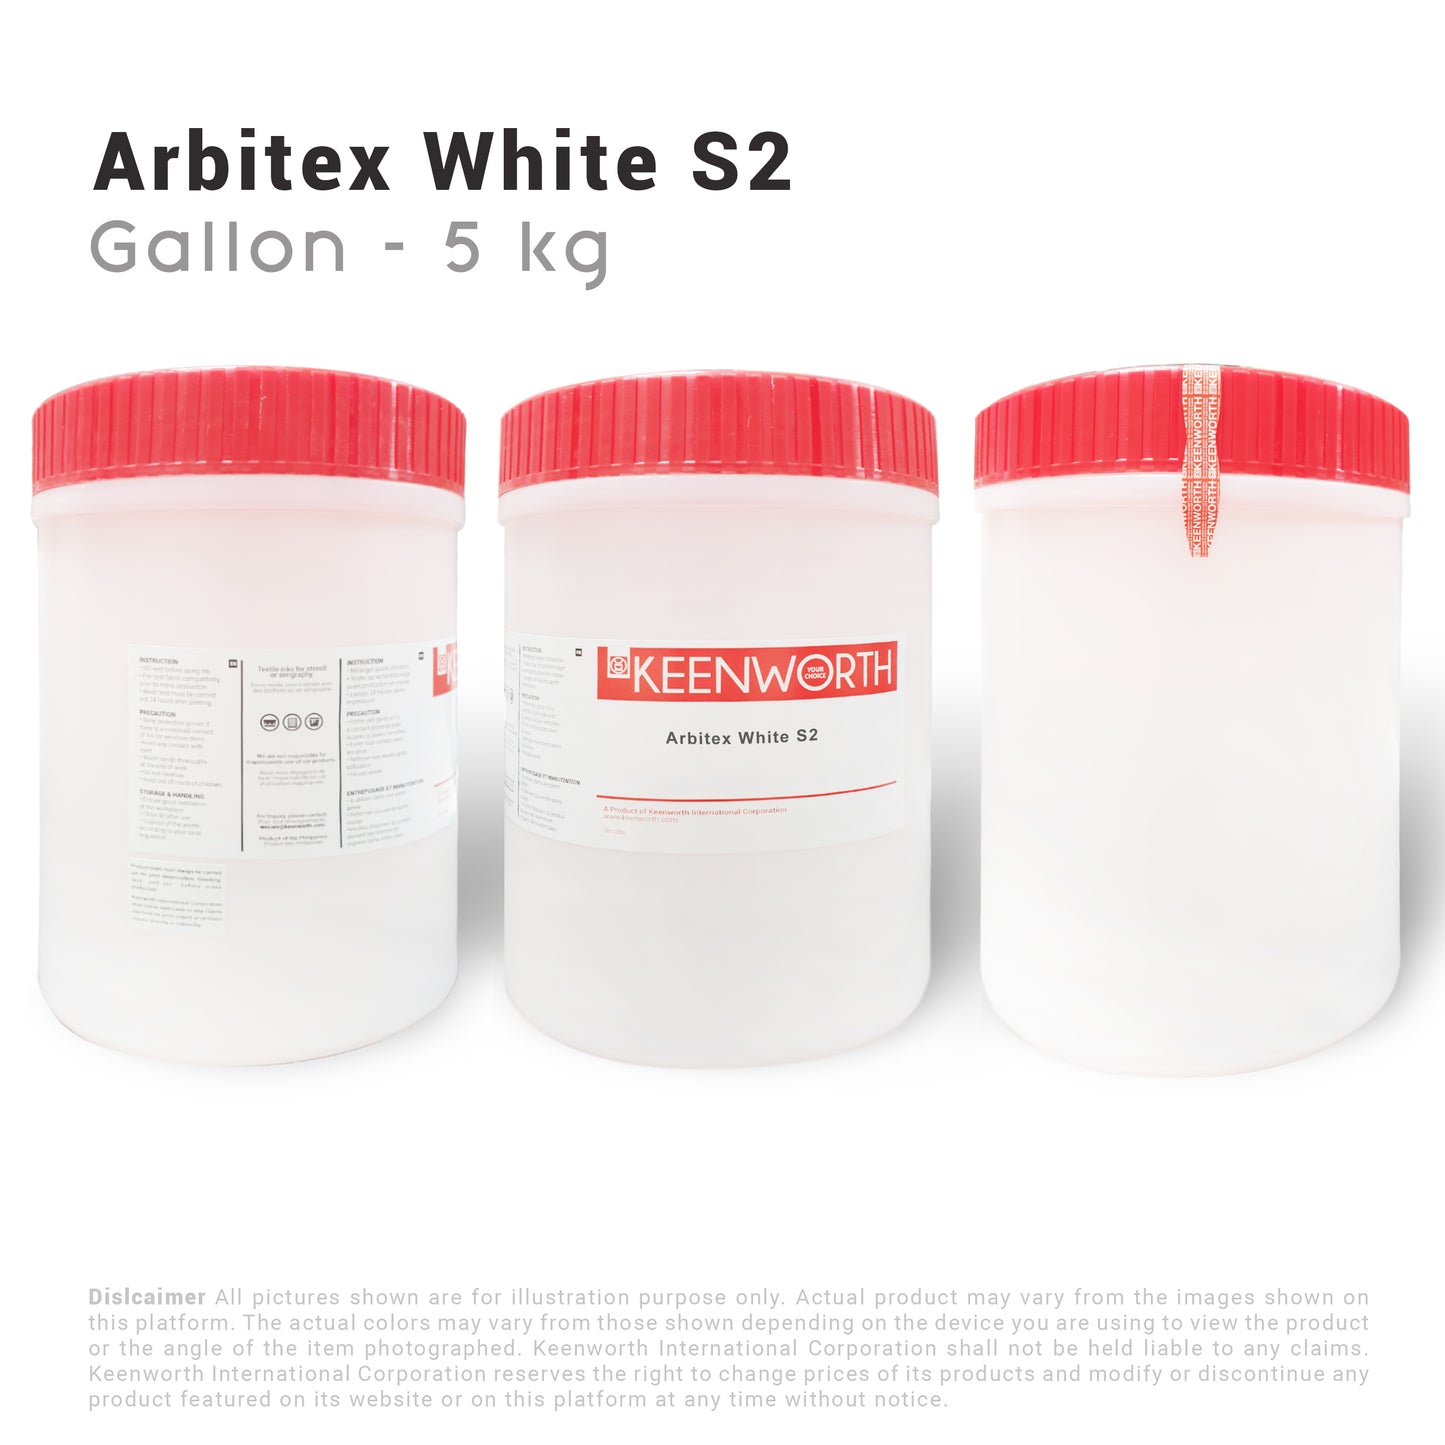 Arbitex White S2